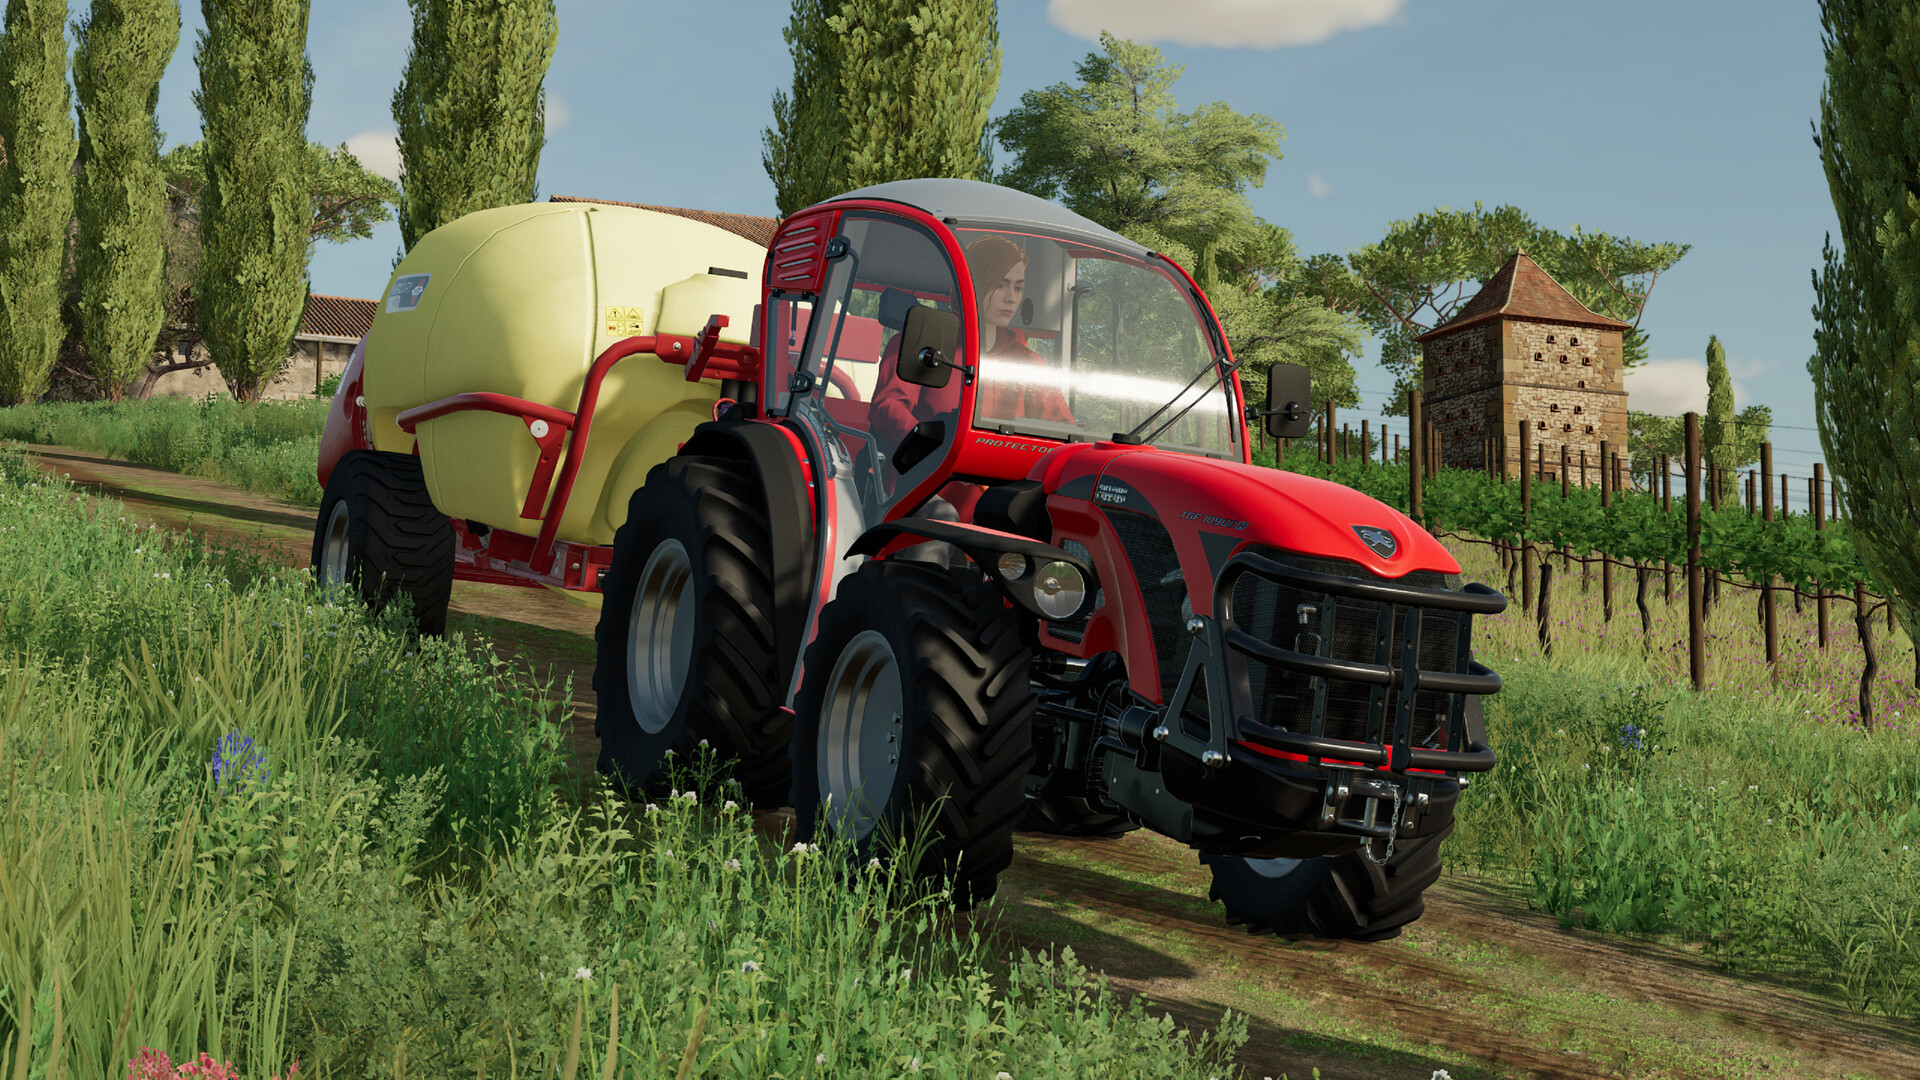 Farming Simulator 22: disponibile il DLC Antonio Carraro Pack